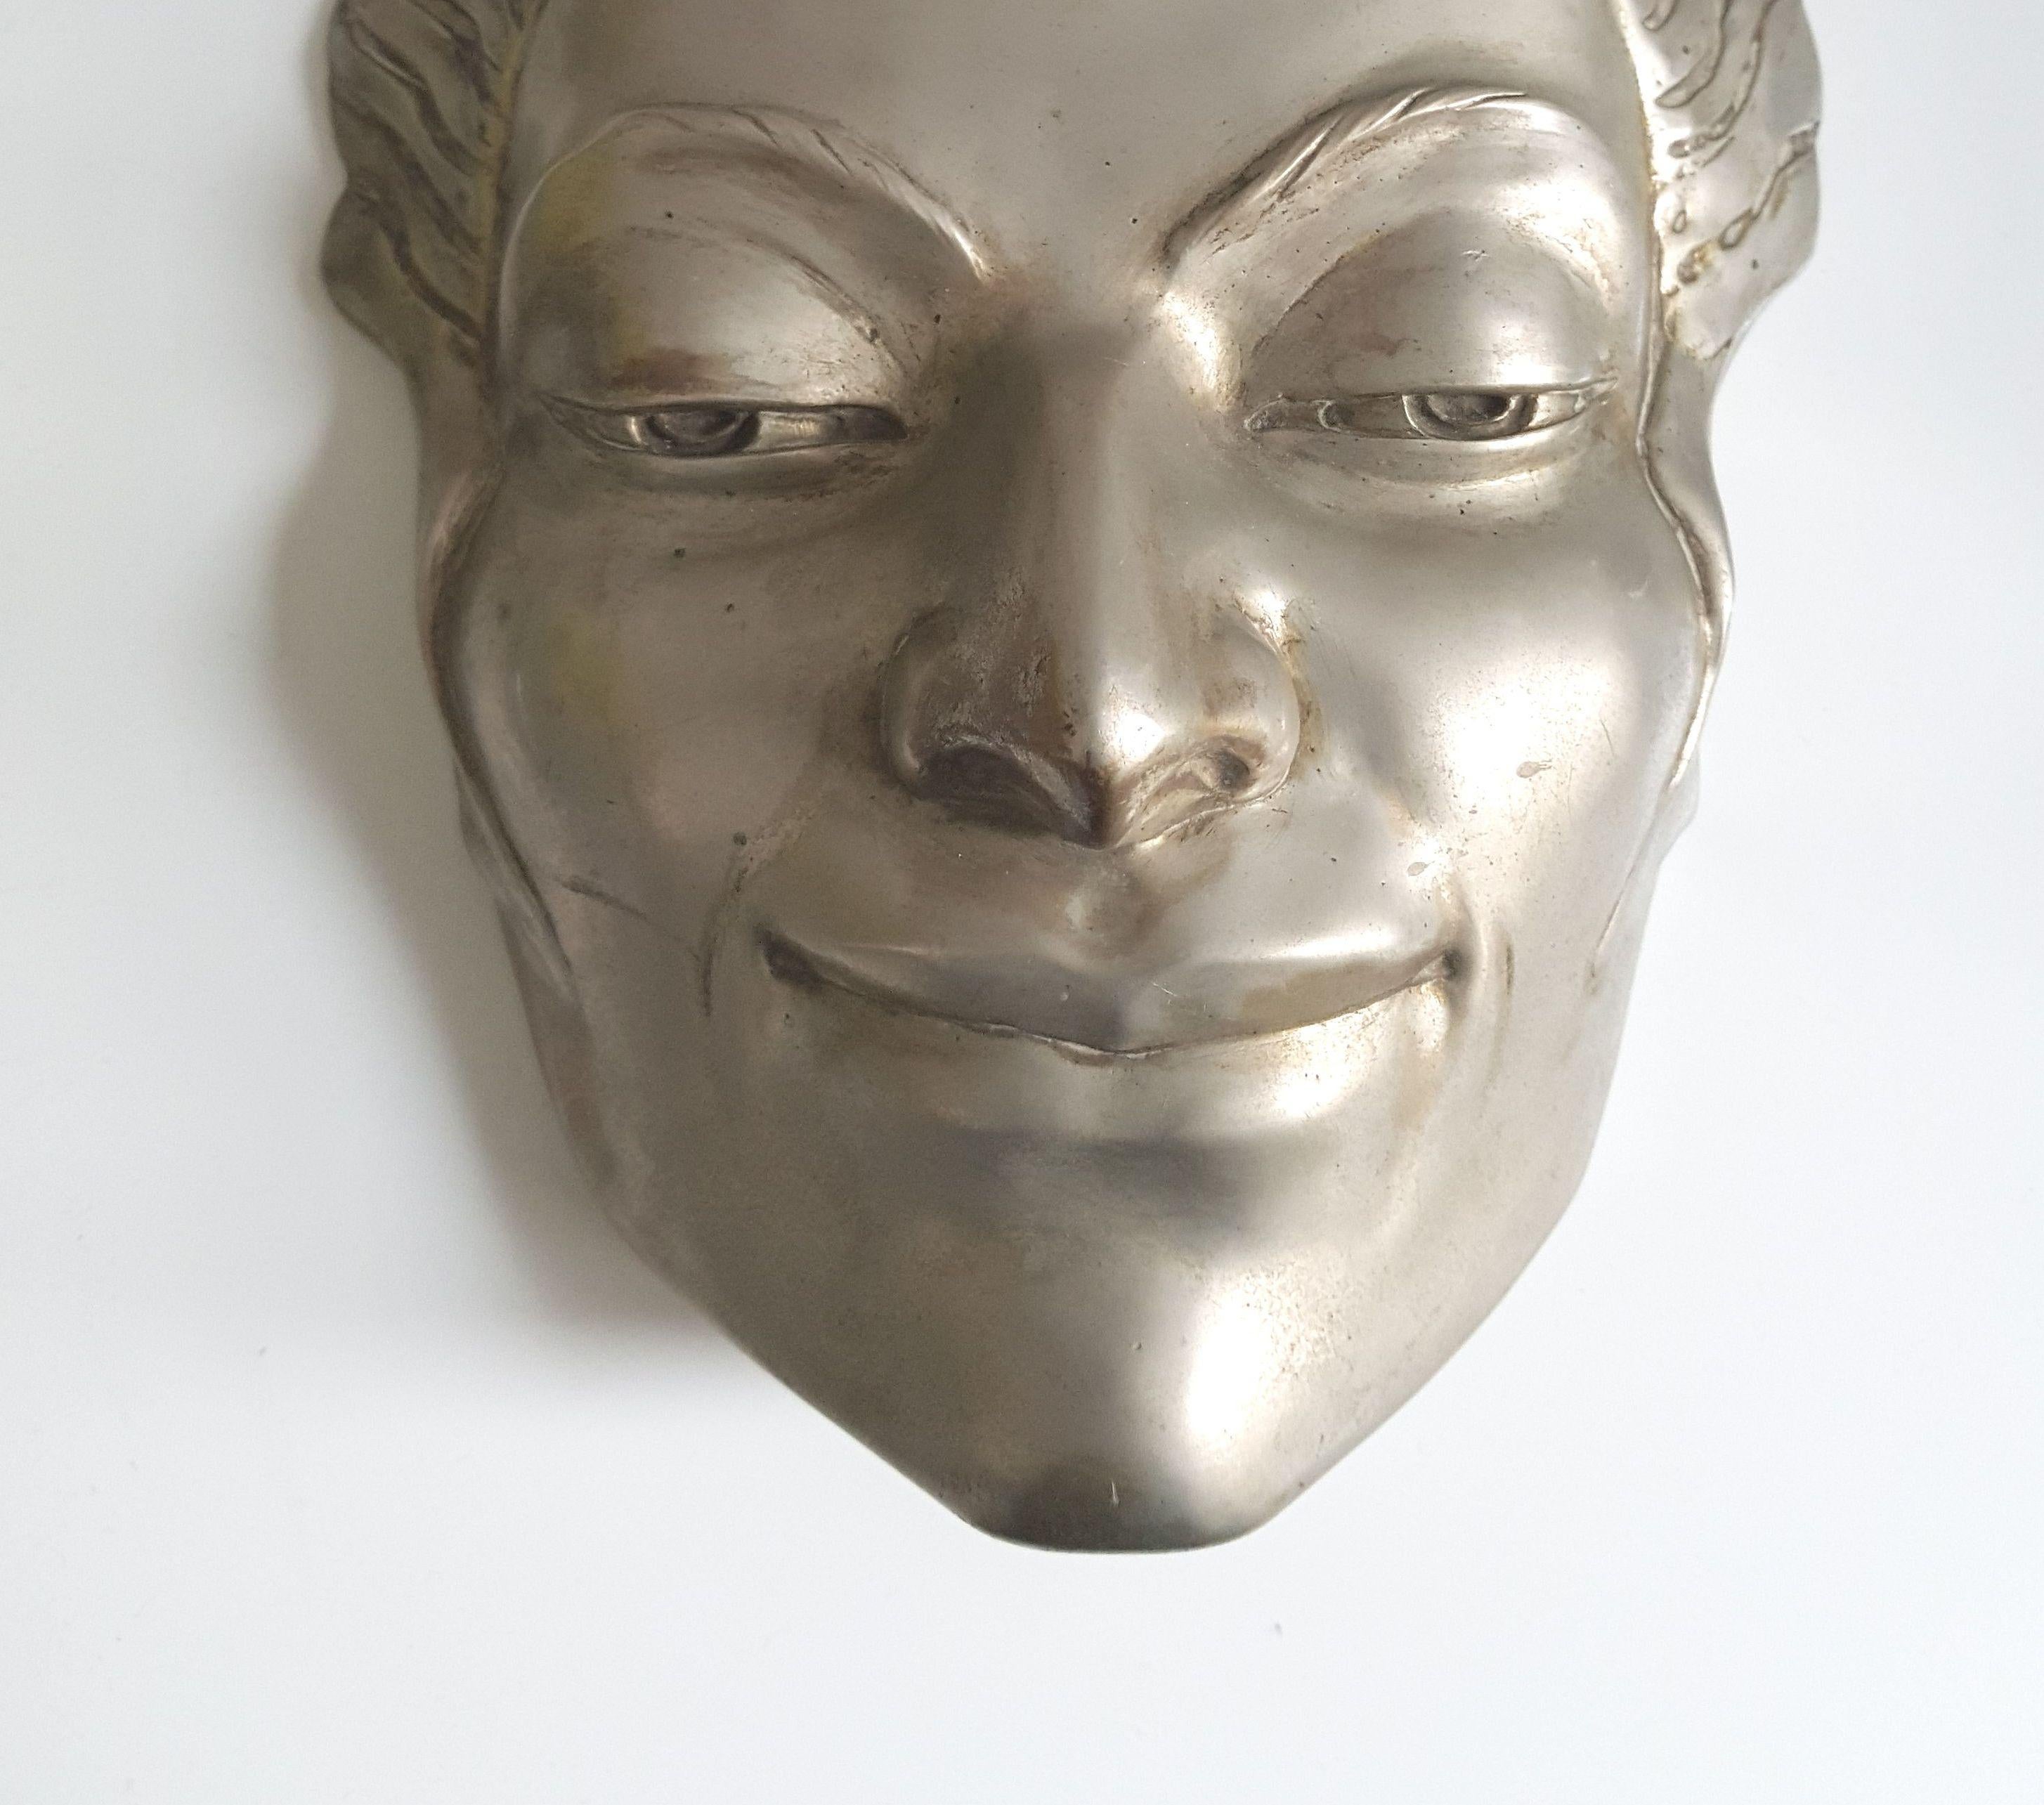 Masque en bronze argenté d'une femme, une pièce originale de Doris Kathleen Flinn. Il s'agissait très probablement de son partenaire qu'elle utilisait souvent comme modèle. Il peut être accroché au mur, monté sur un support ou même utilisé comme